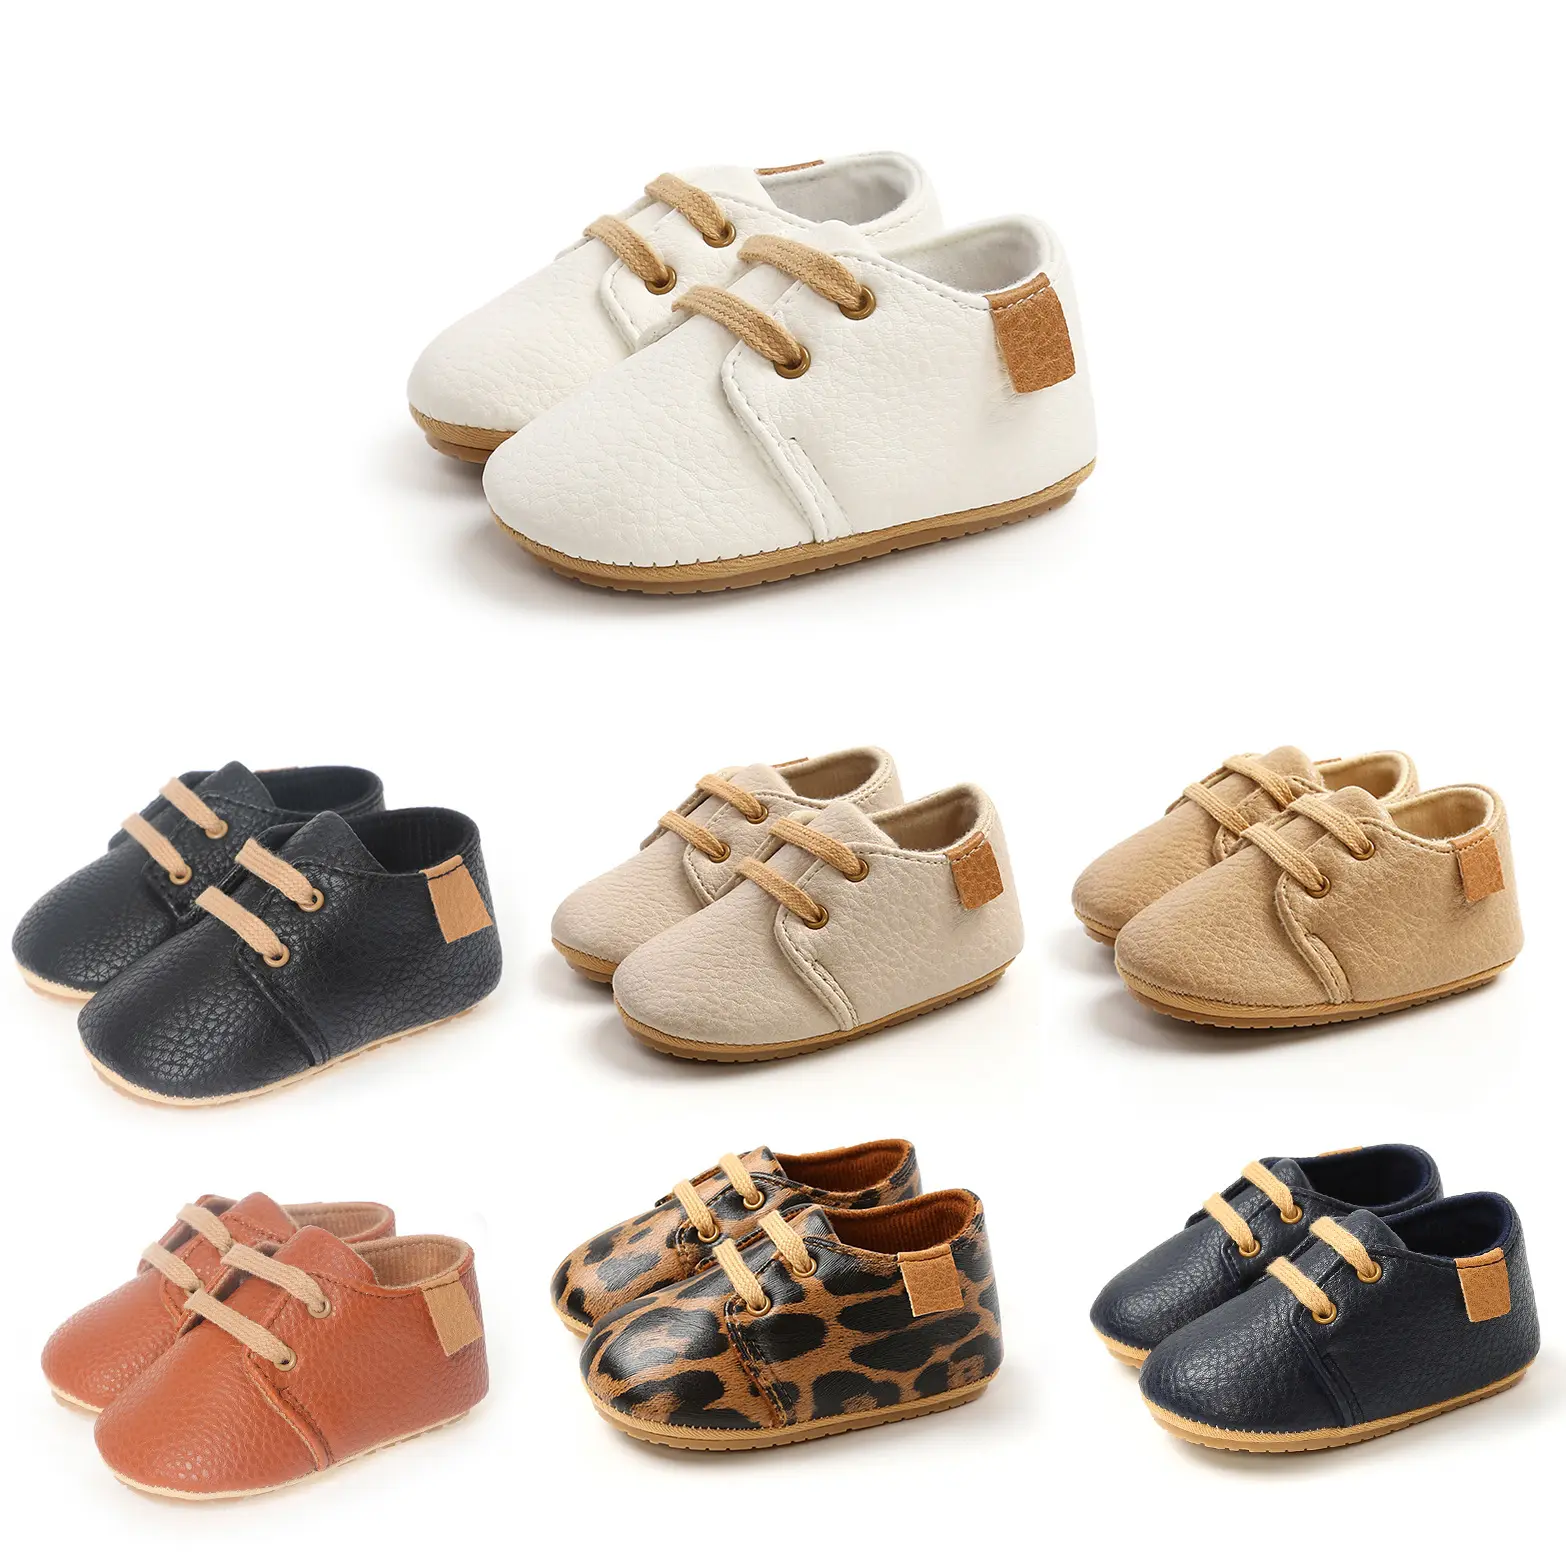 Chaussures en cuir pour bébé fille garçon chaussures pour premiers pas chaussures rétro en caoutchouc antidérapantes pour bébé chaussure en caoutchouc antidérapante pour enfant en bas âge